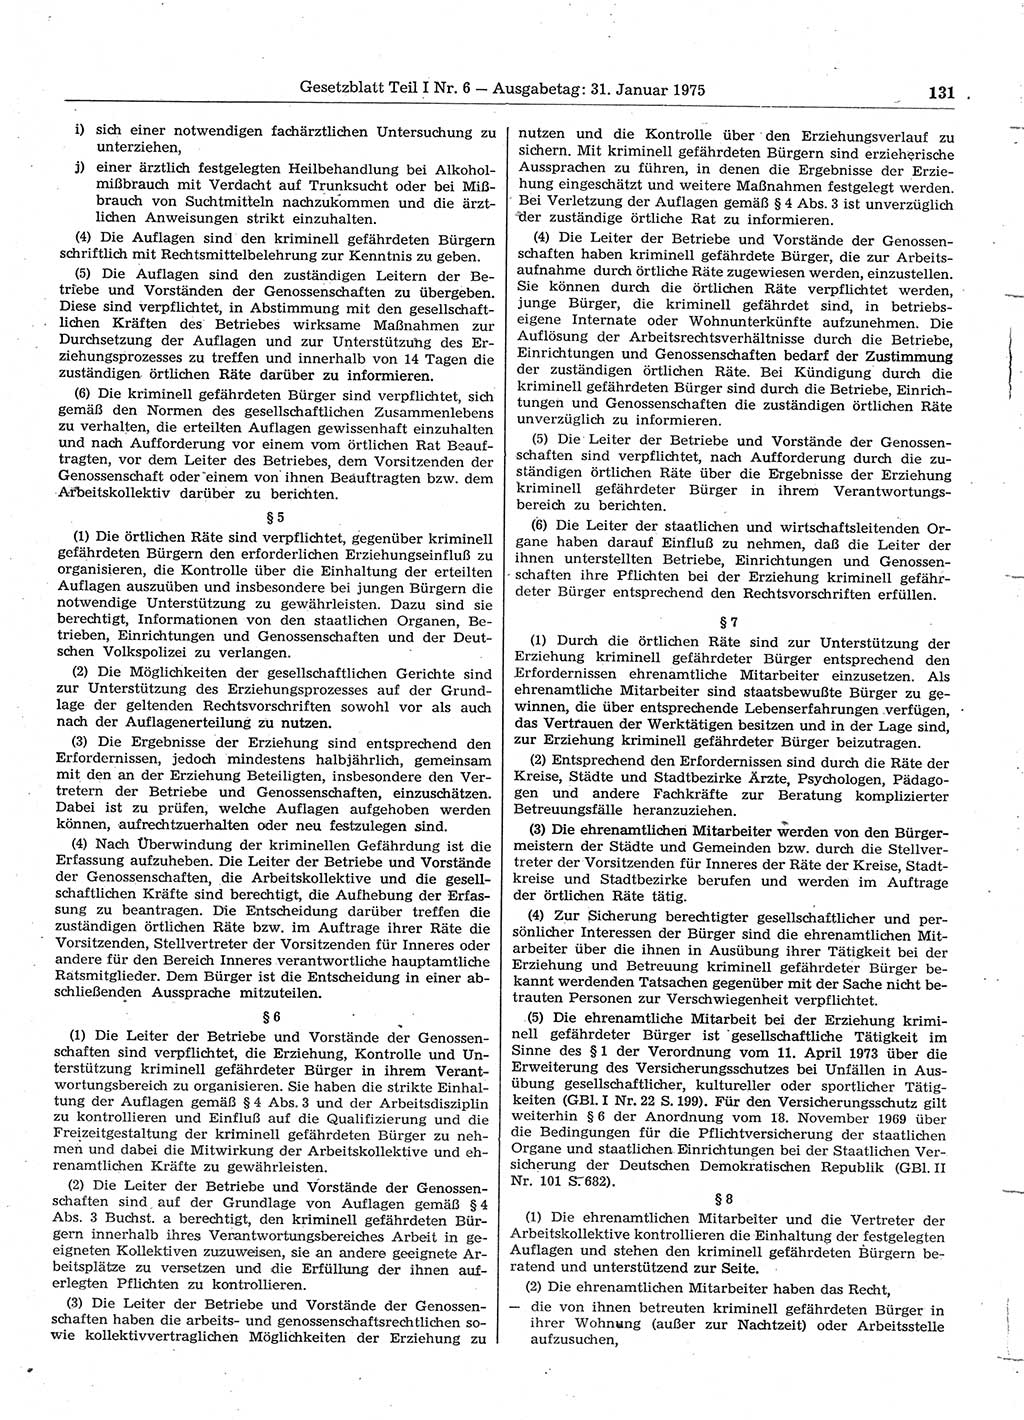 Gesetzblatt (GBl.) der Deutschen Demokratischen Republik (DDR) Teil Ⅰ 1975, Seite 131 (GBl. DDR Ⅰ 1975, S. 131)